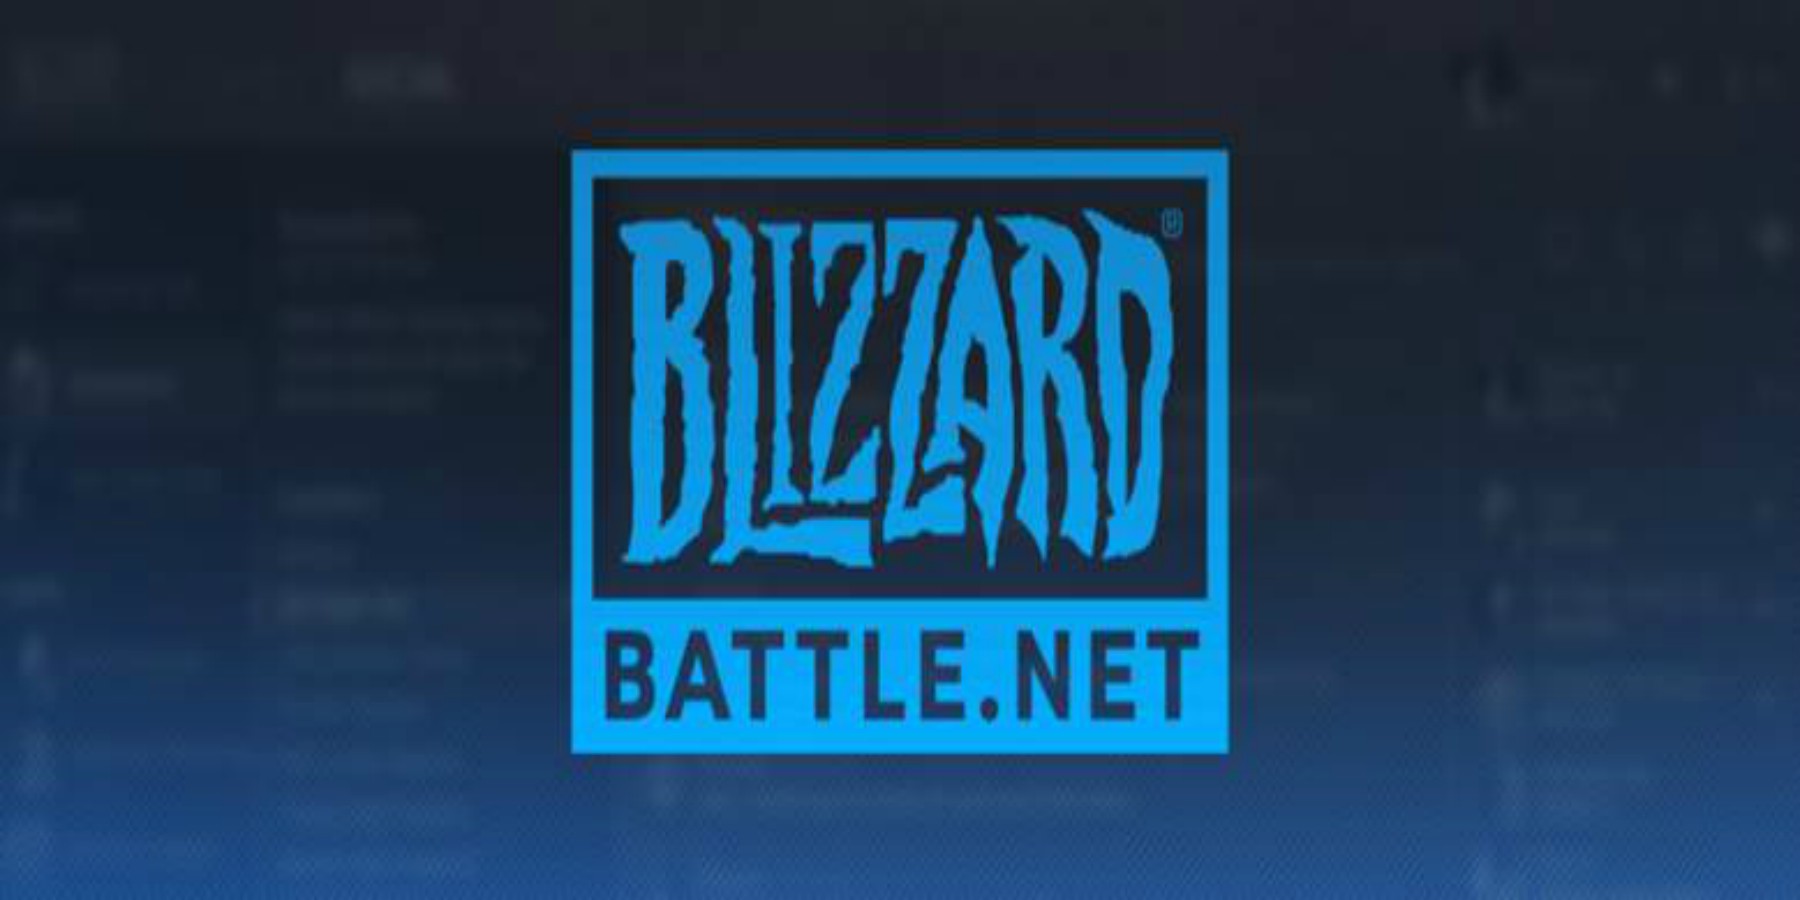 blizzard battle net claimed by battle.net